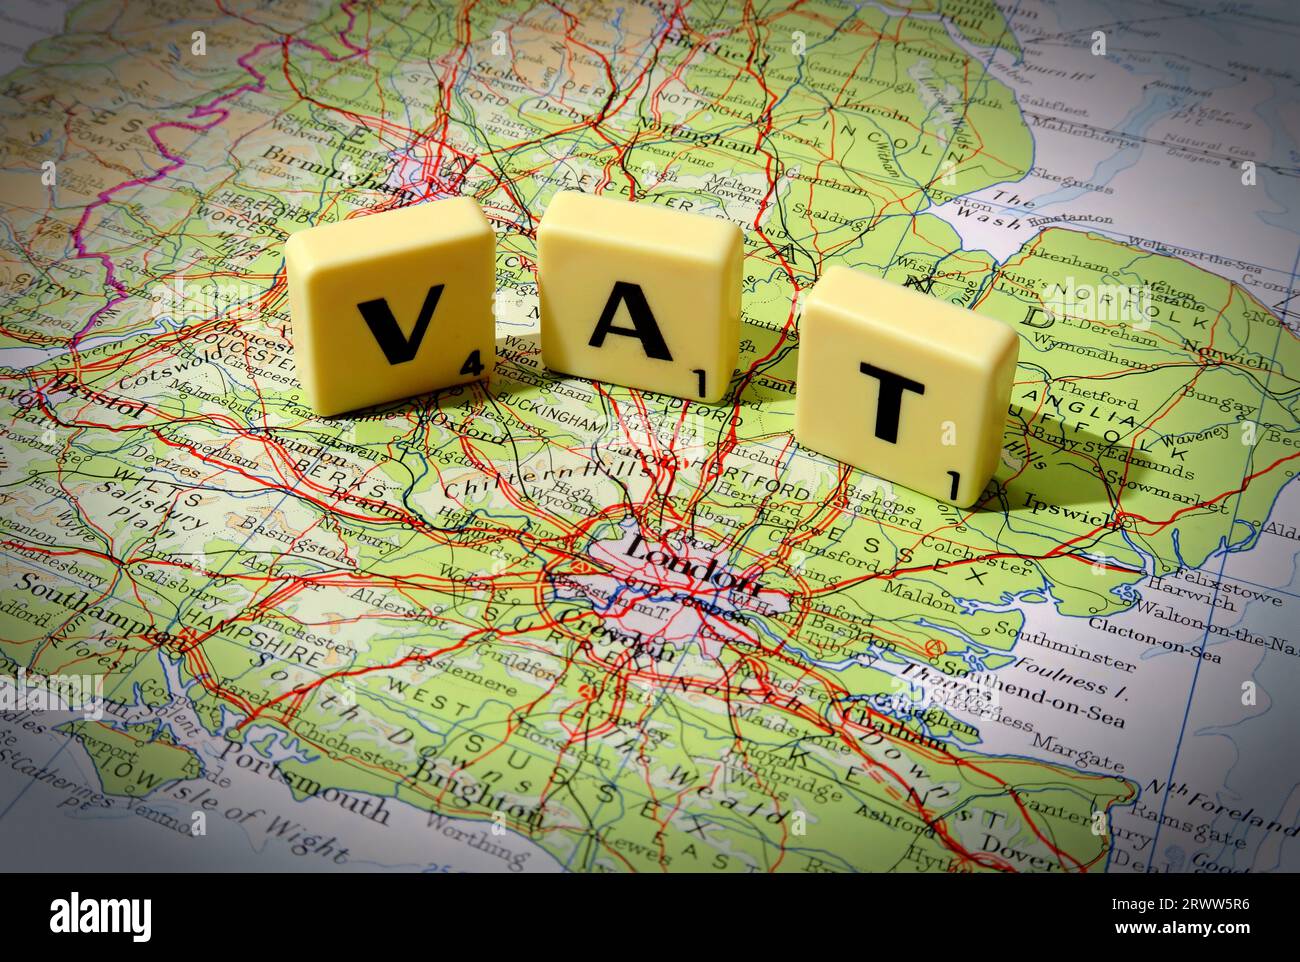 IVA l'imposta sul valore aggiunto per l'acquisto, indicata in lettere Scrabble su una mappa di Inghilterra, Gran Bretagna, Regno Unito Foto Stock